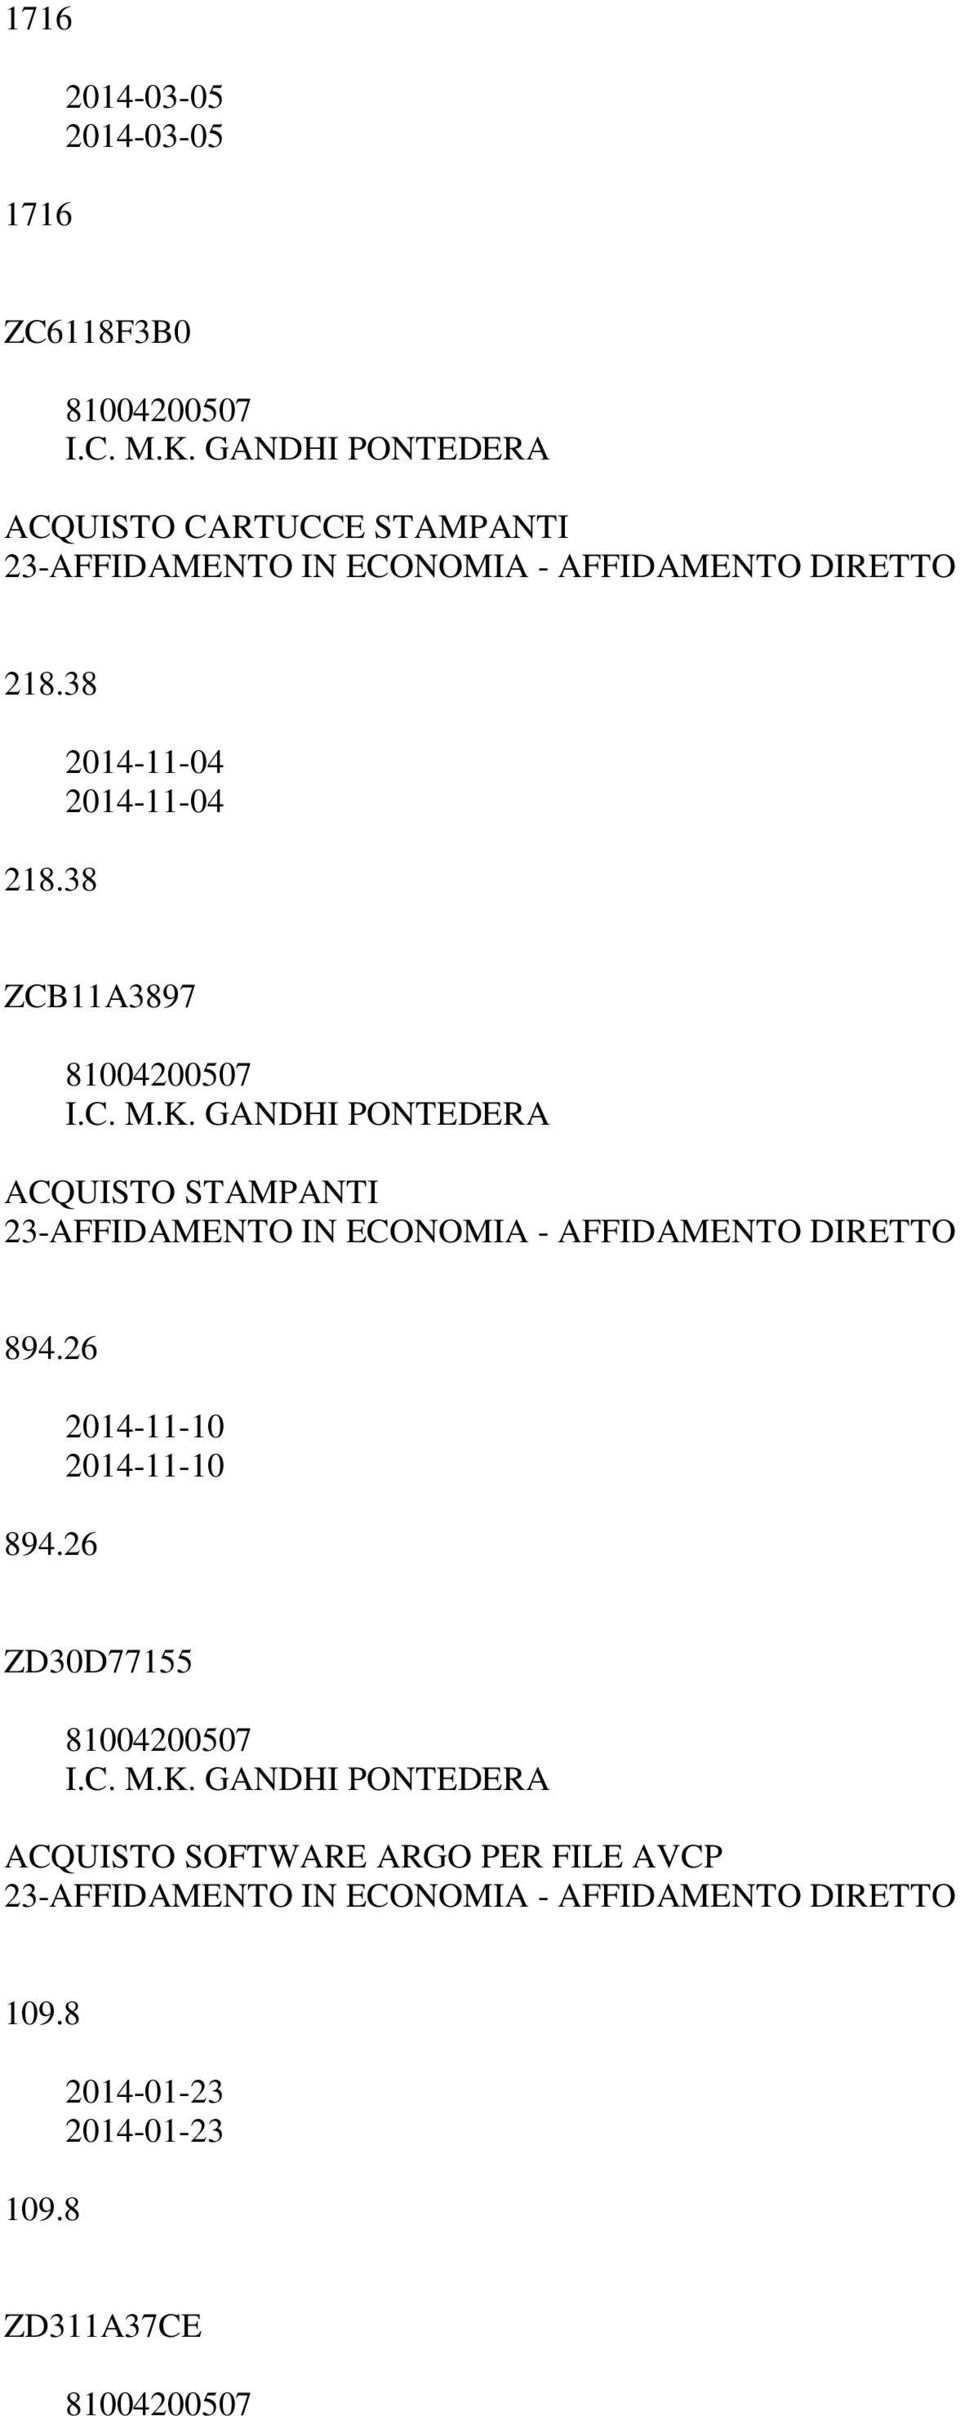 38 2014-11-04 2014-11-04 ZCB11A3897 ACQUISTO STAMPANTI 894.26 894.